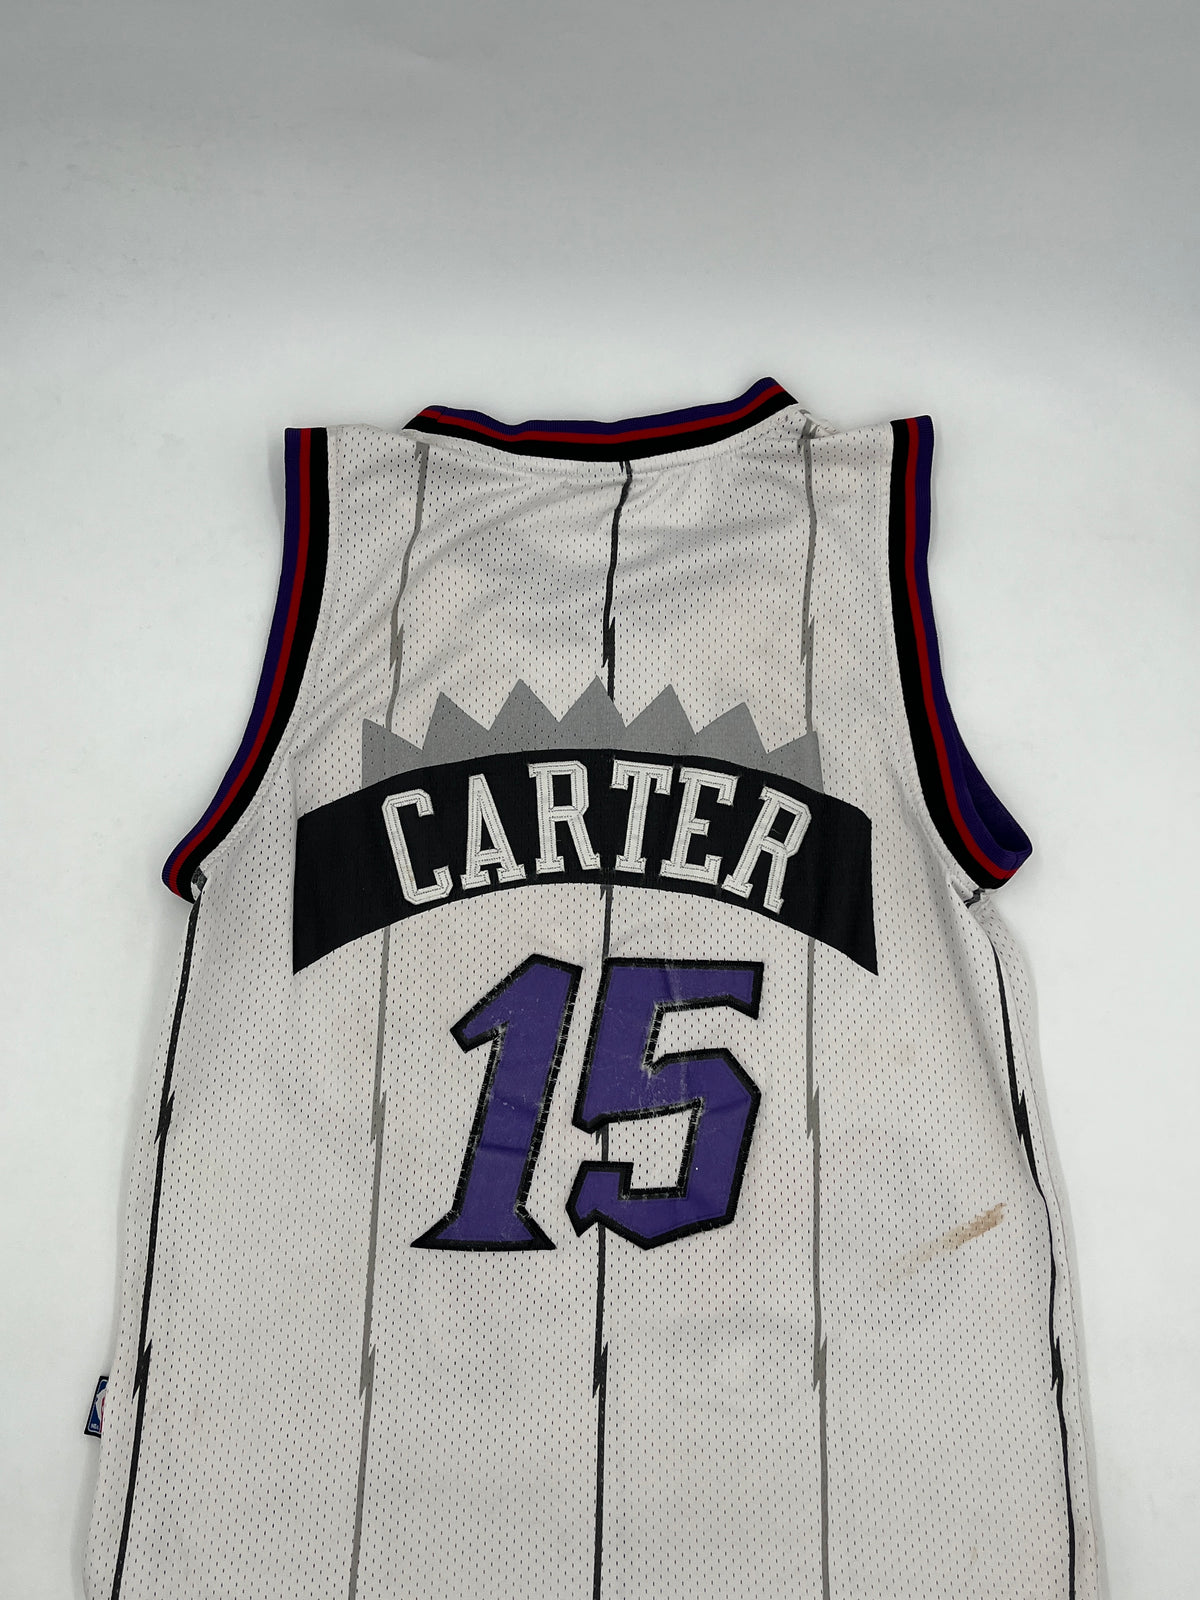 Vintage Vince Carter Toronto Raptors Jersey